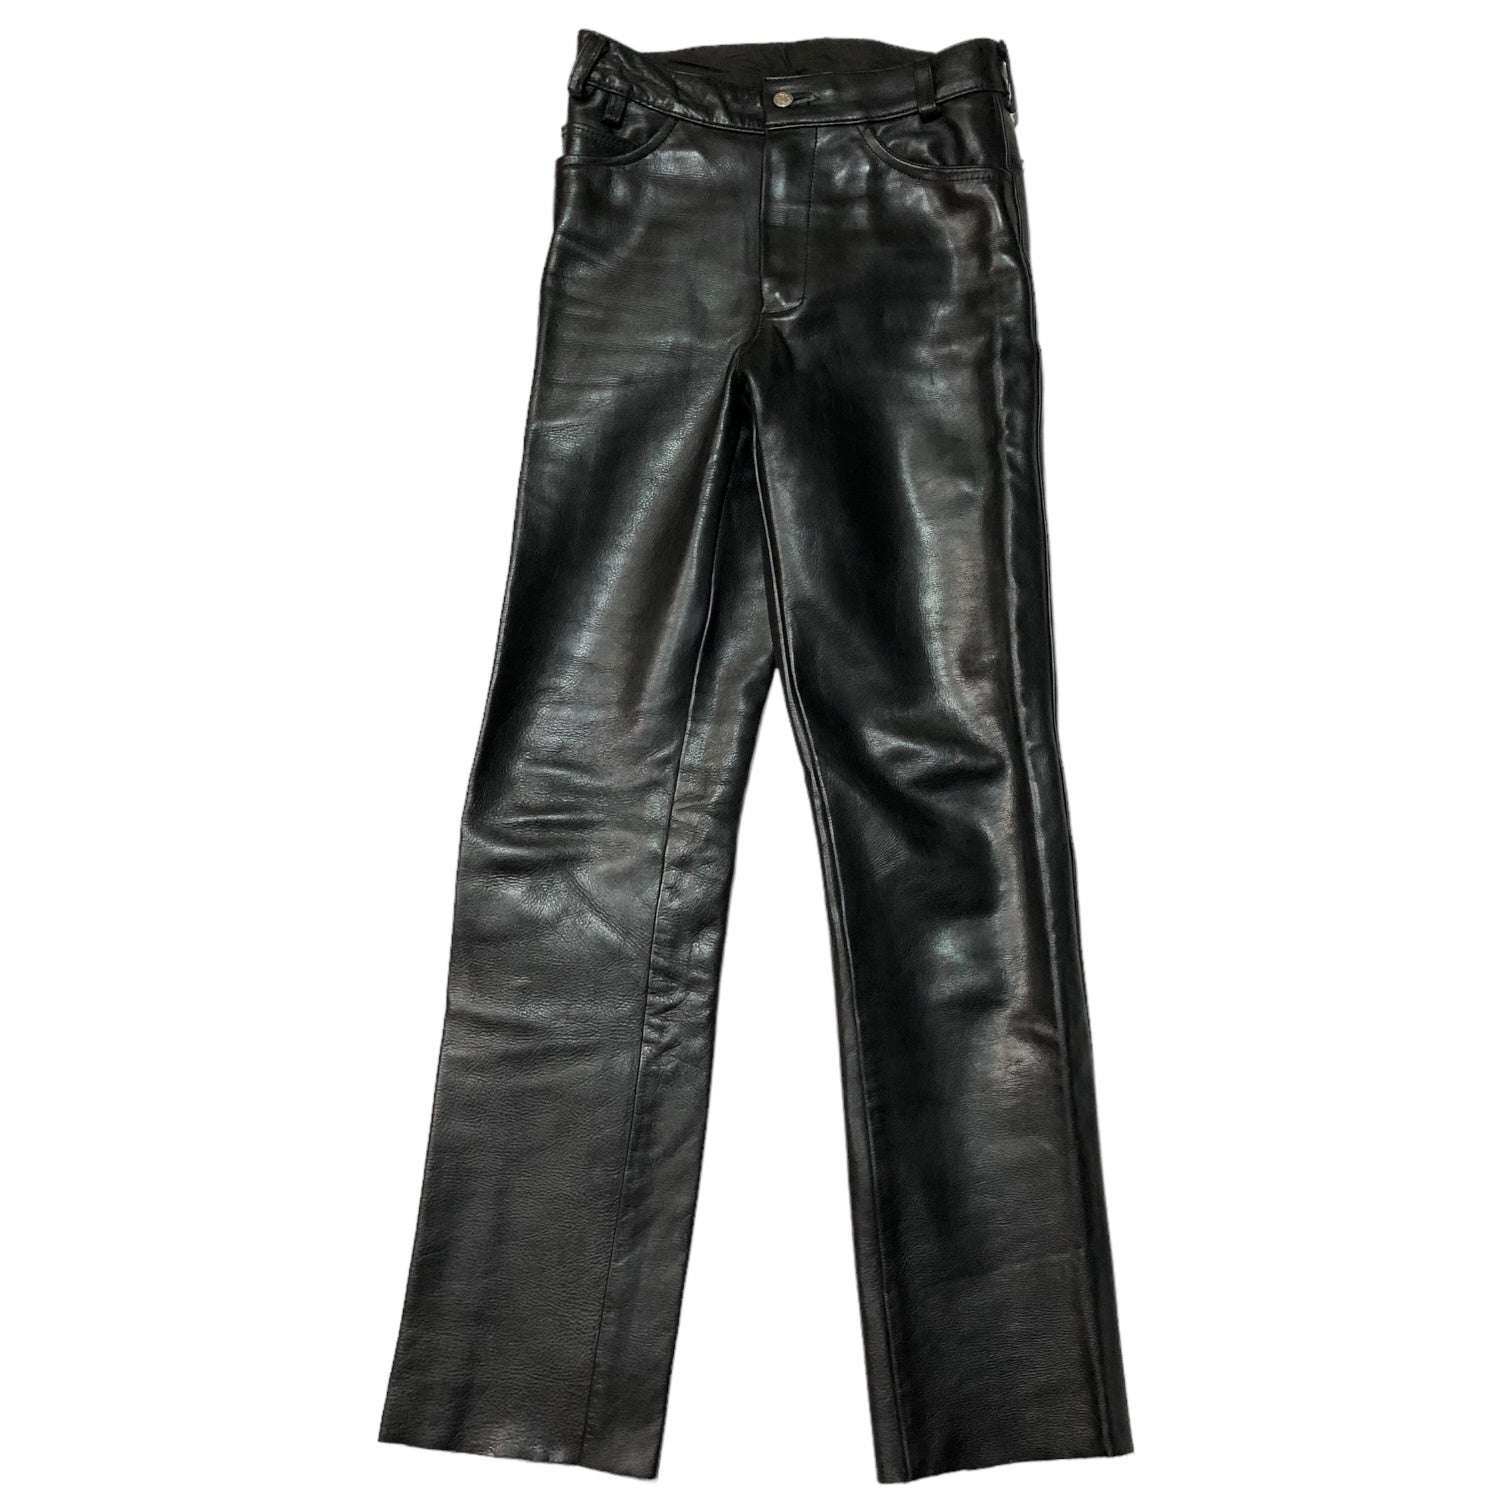 VANSON(バンソン) Biker leather pants バイカー レザー パンツ アメカジ W32 ブラック USA製